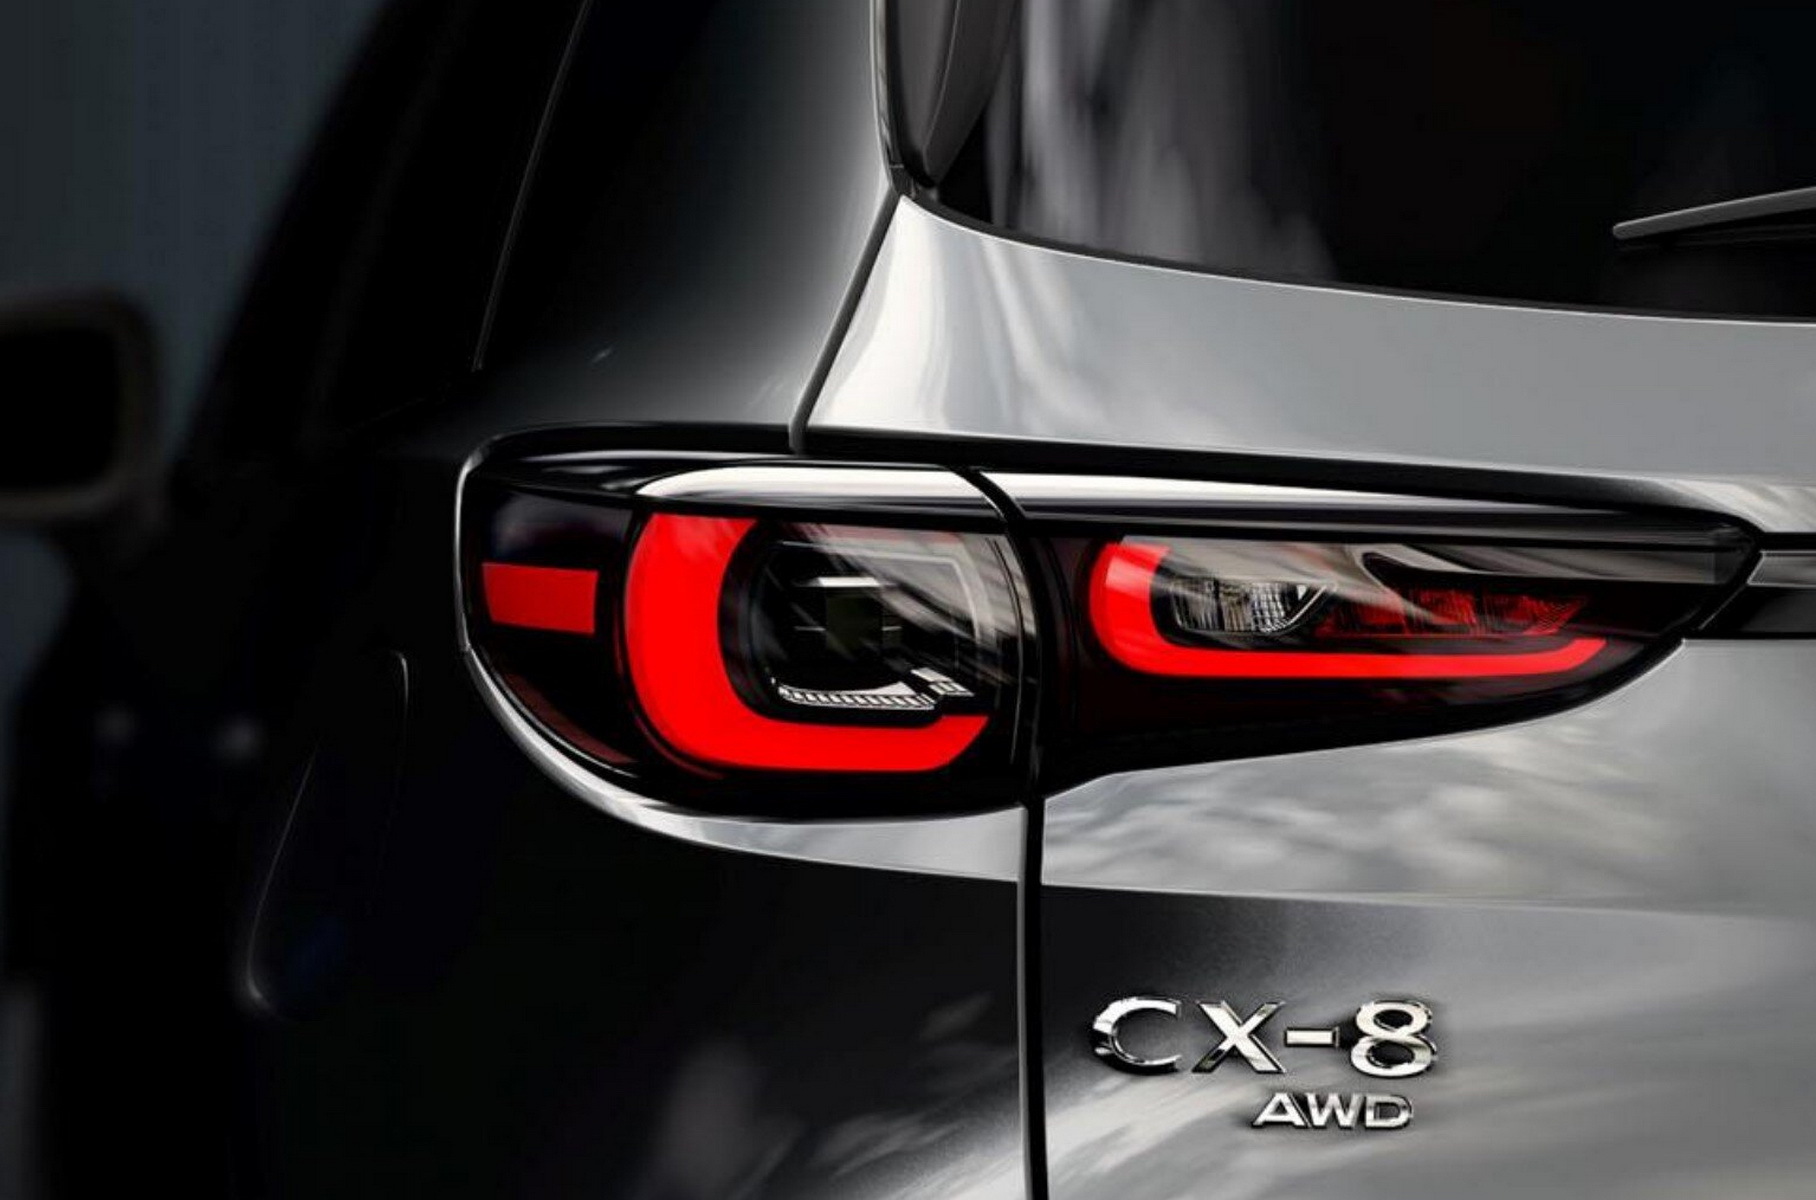 Mazda всесторонне обновила большой кроссовер CX-8